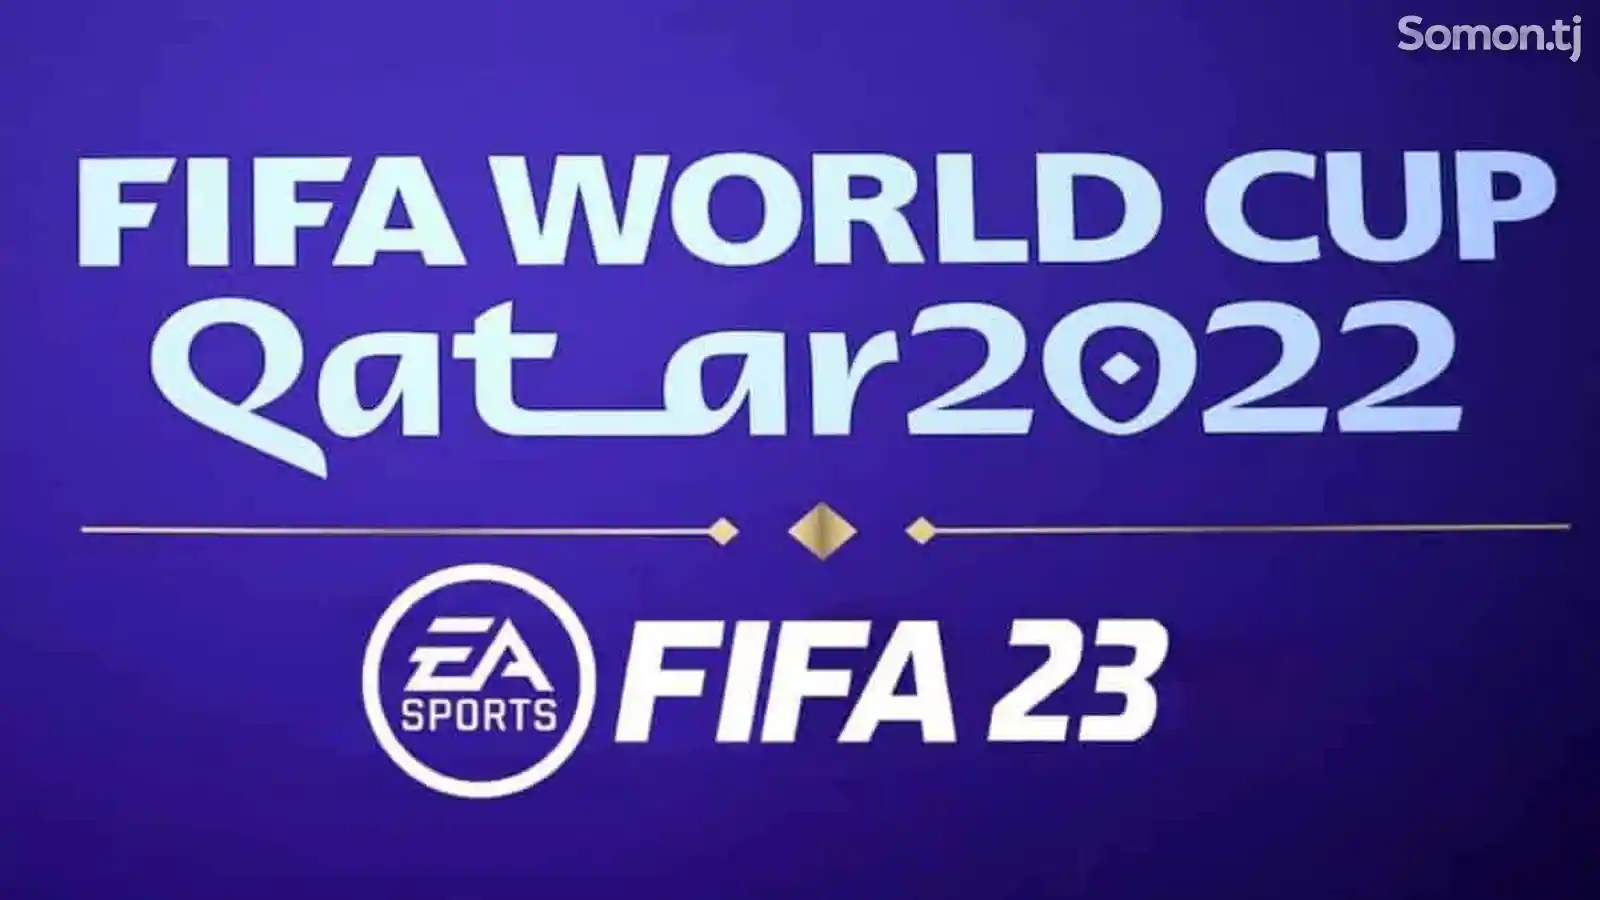 Игра для Playstation 4 FIFA 23 Qatar